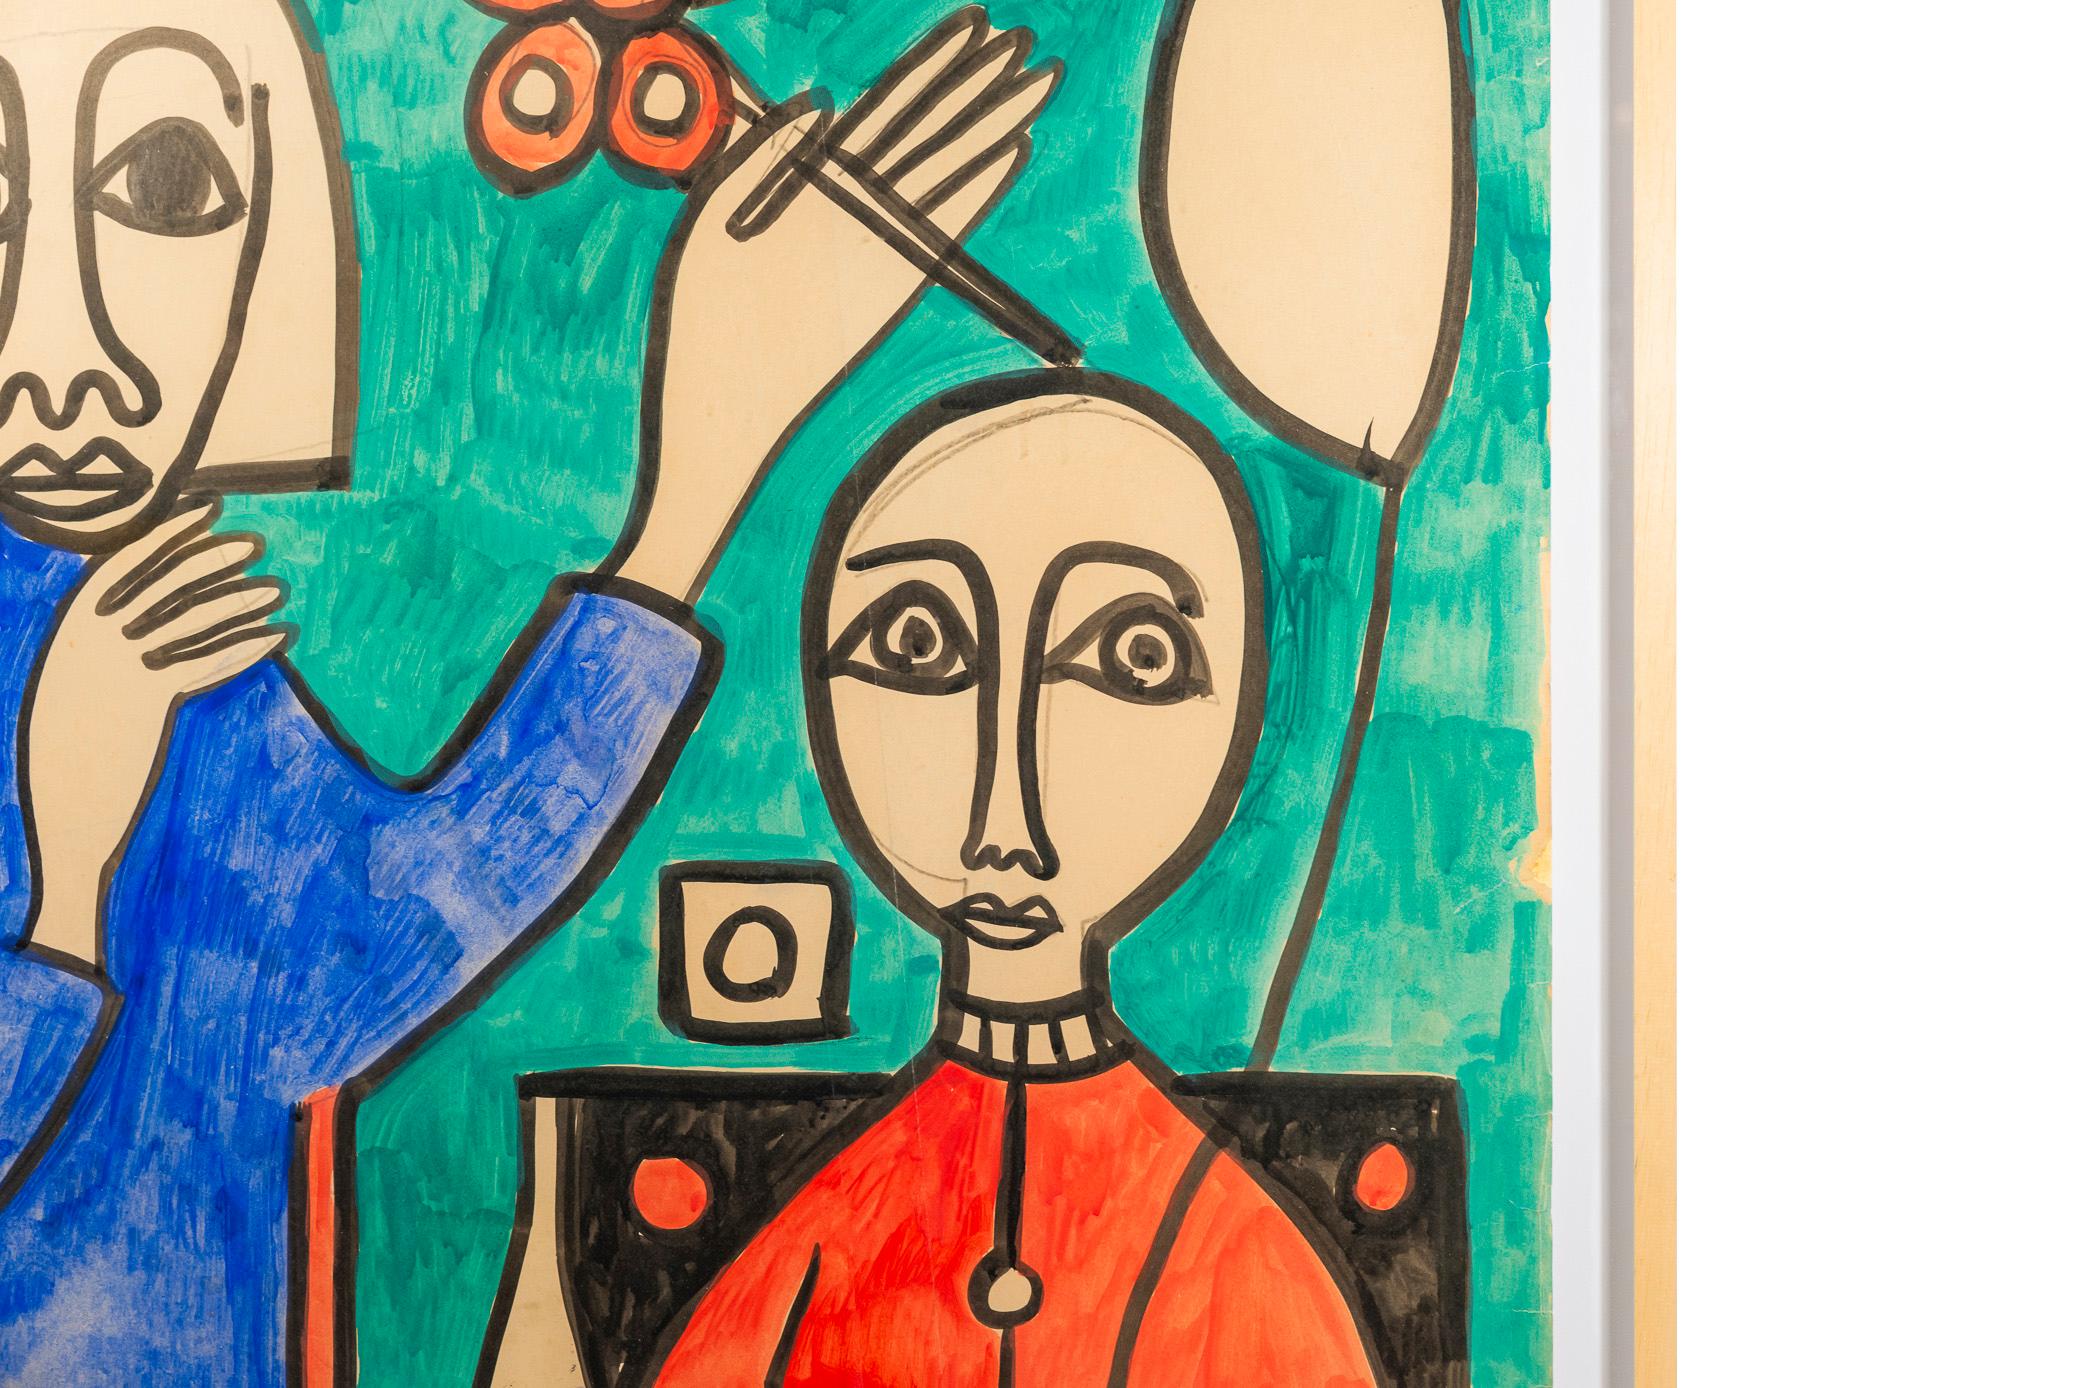 Albert Chubac, Composition, 
Représentation de deux personnages, 
Peinture, techniques mixtes sur papier,
vers 1965, France. 

Mesures : Hauteur 99 cm, largeur 81 cm, profondeur 3 cm.

Albert Chubac est né à Genève en 1920. Après avoir étudié les